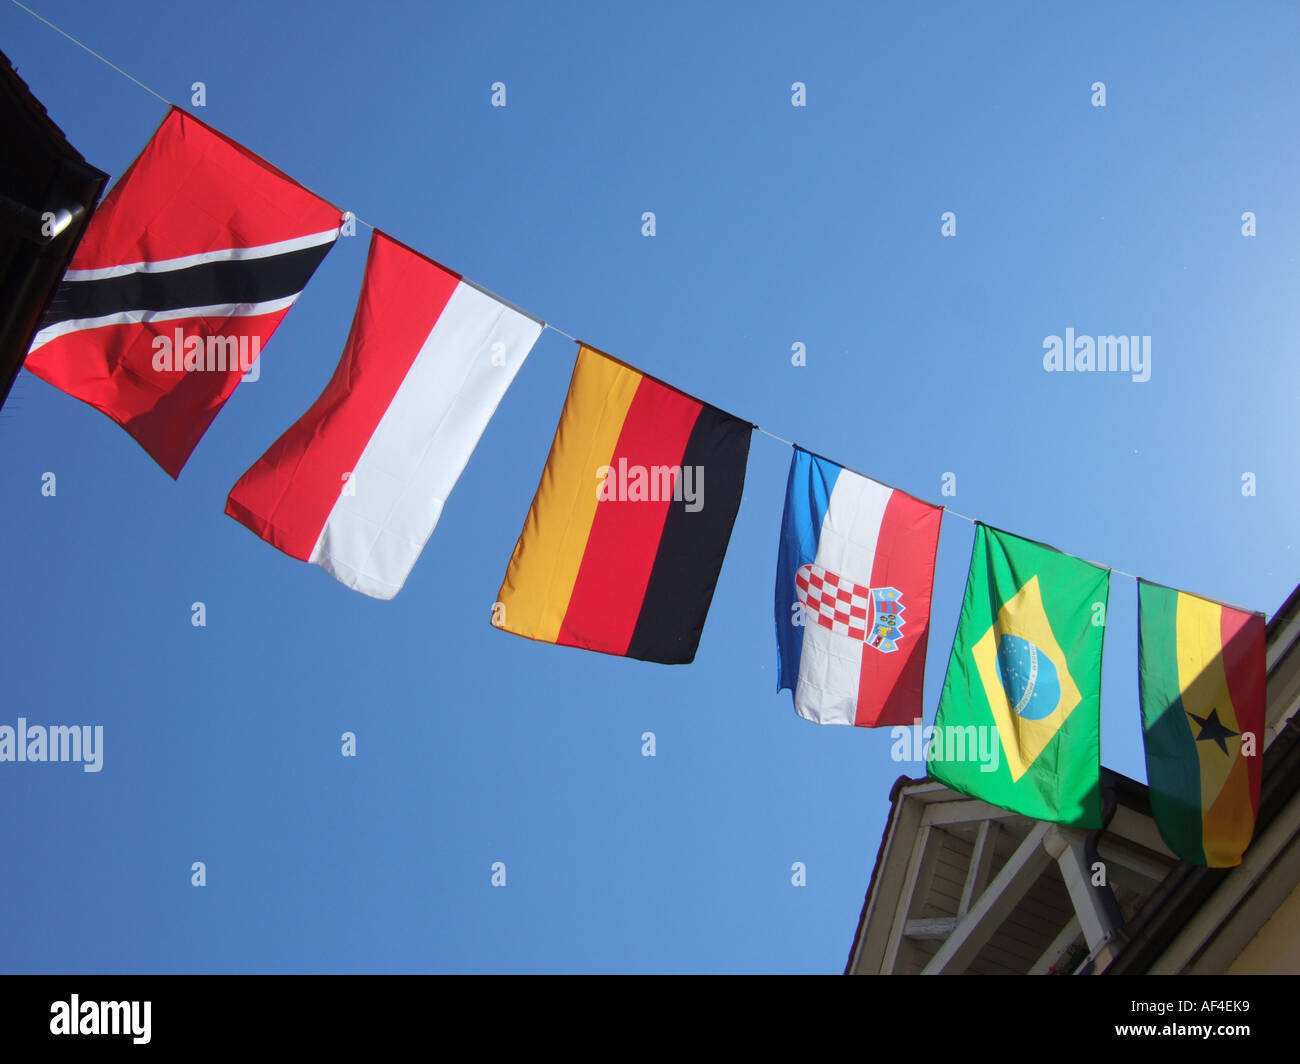 Une corde avec les drapeaux des pays Trinité-et-Tobago Pologne Allemagne Croatie Brésil Ghana apparaissent sur une screet Banque D'Images